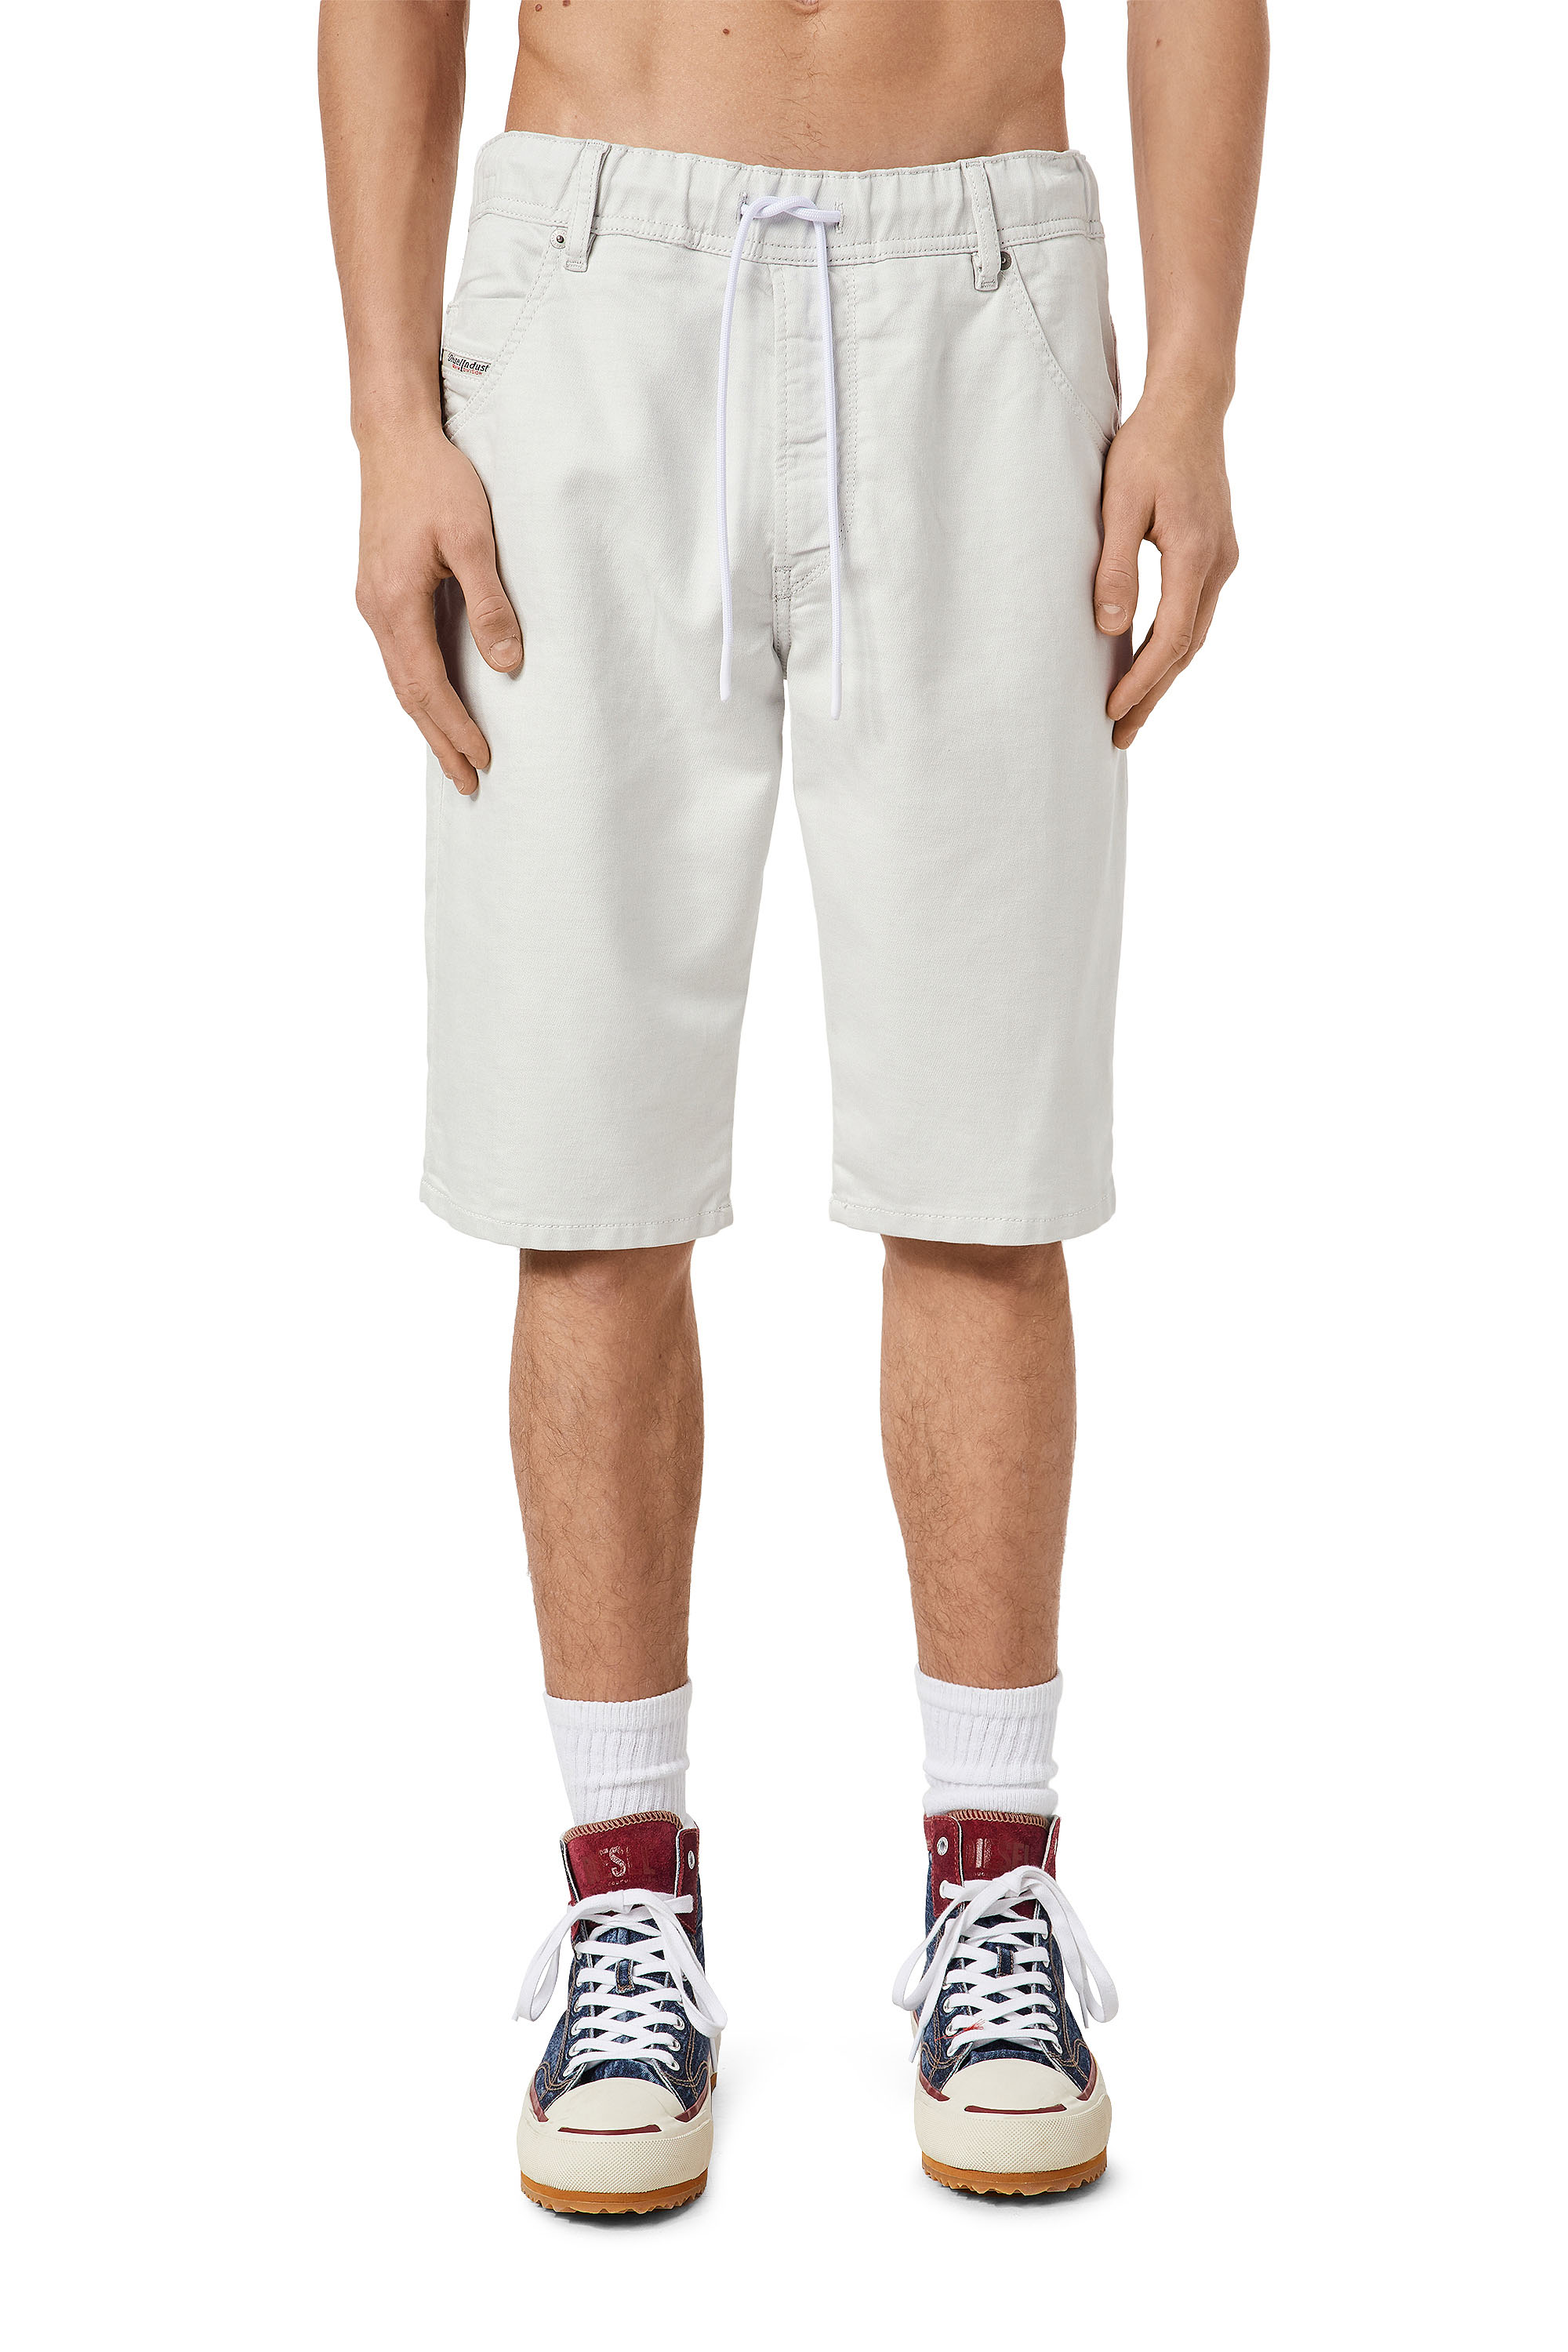 kaas Lotsbestemming Aanval Diesel Shorts In Jogg Jeans In White | ModeSens